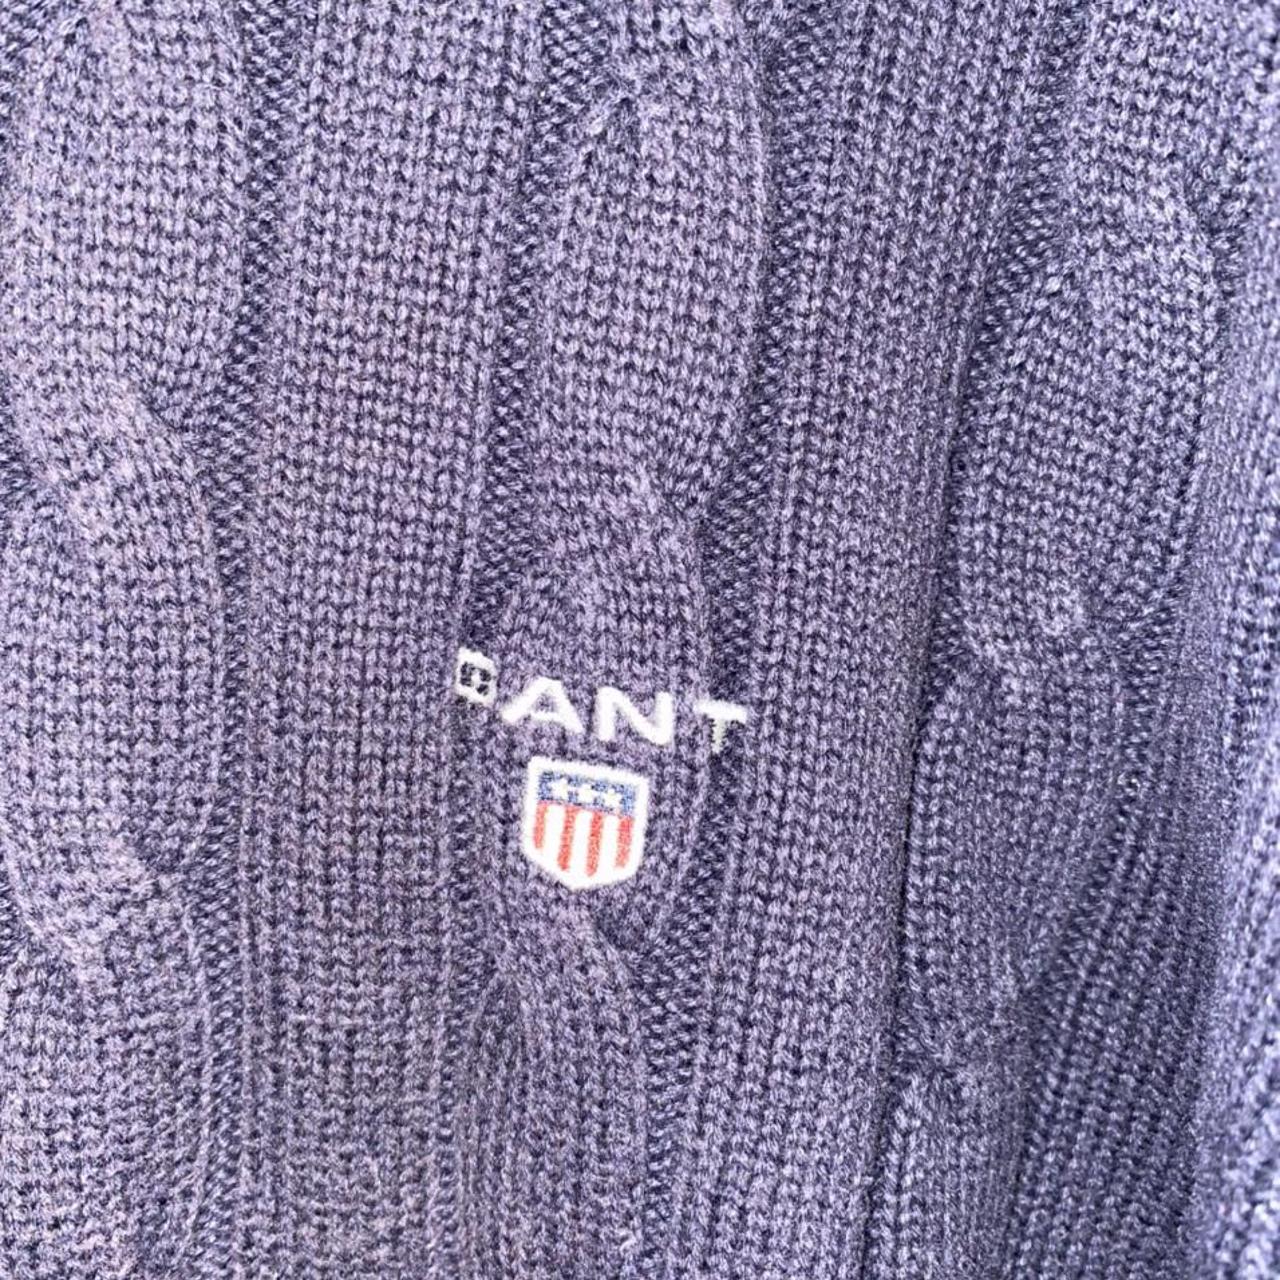 Product Image 3 - Vintage Gant Sweater Jumper 

Size